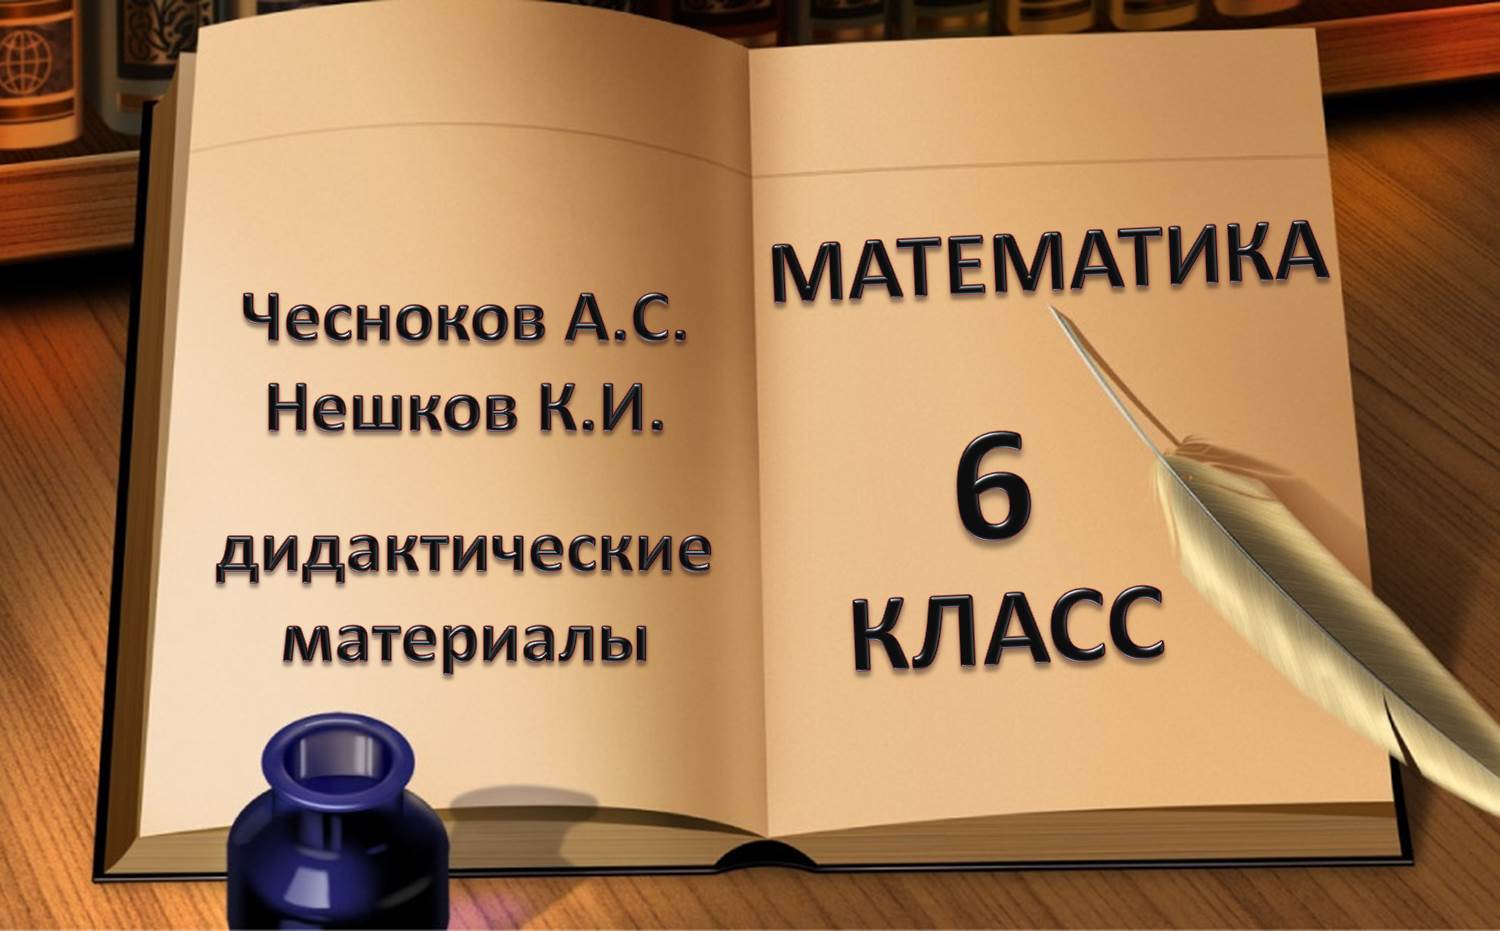 Чесноков и Нешков дидактические материалы математика 6 класс решебник гдз ответы на задачи